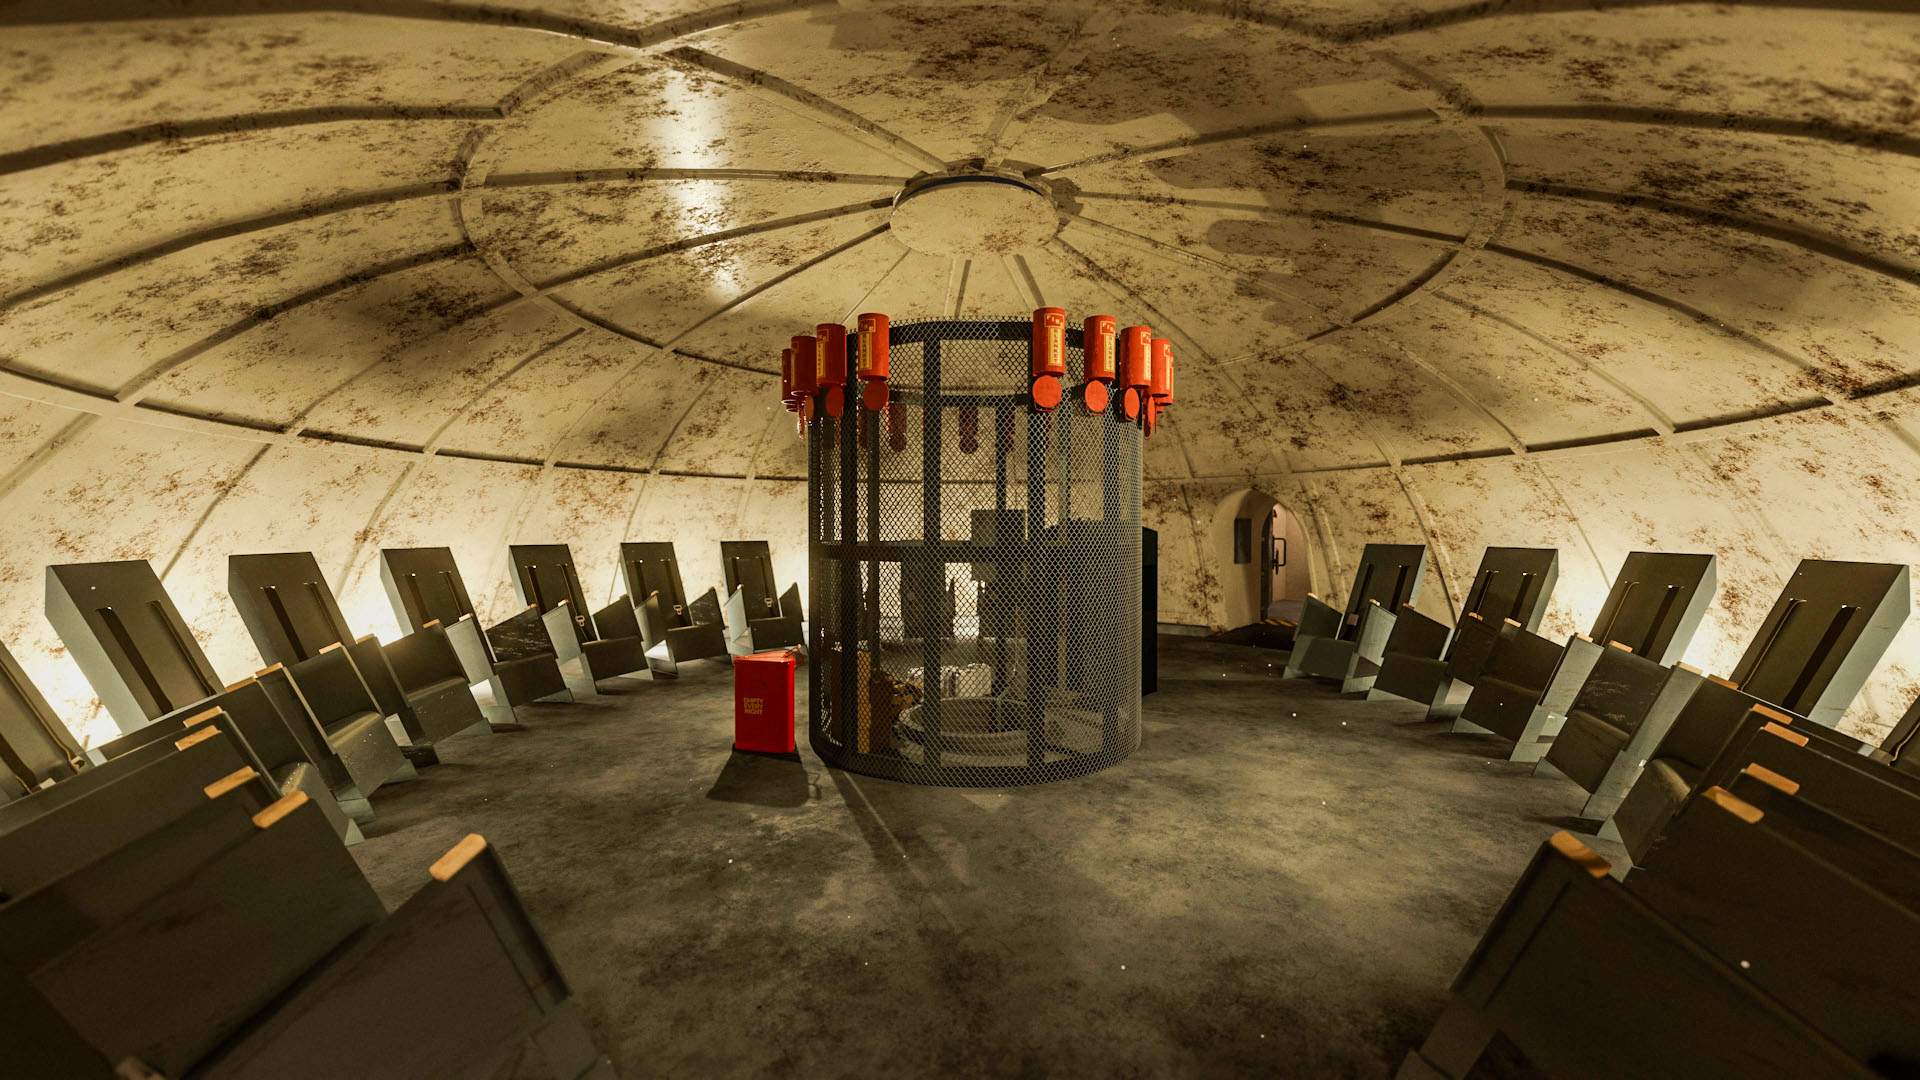 NASA's rubber room blast room bunker